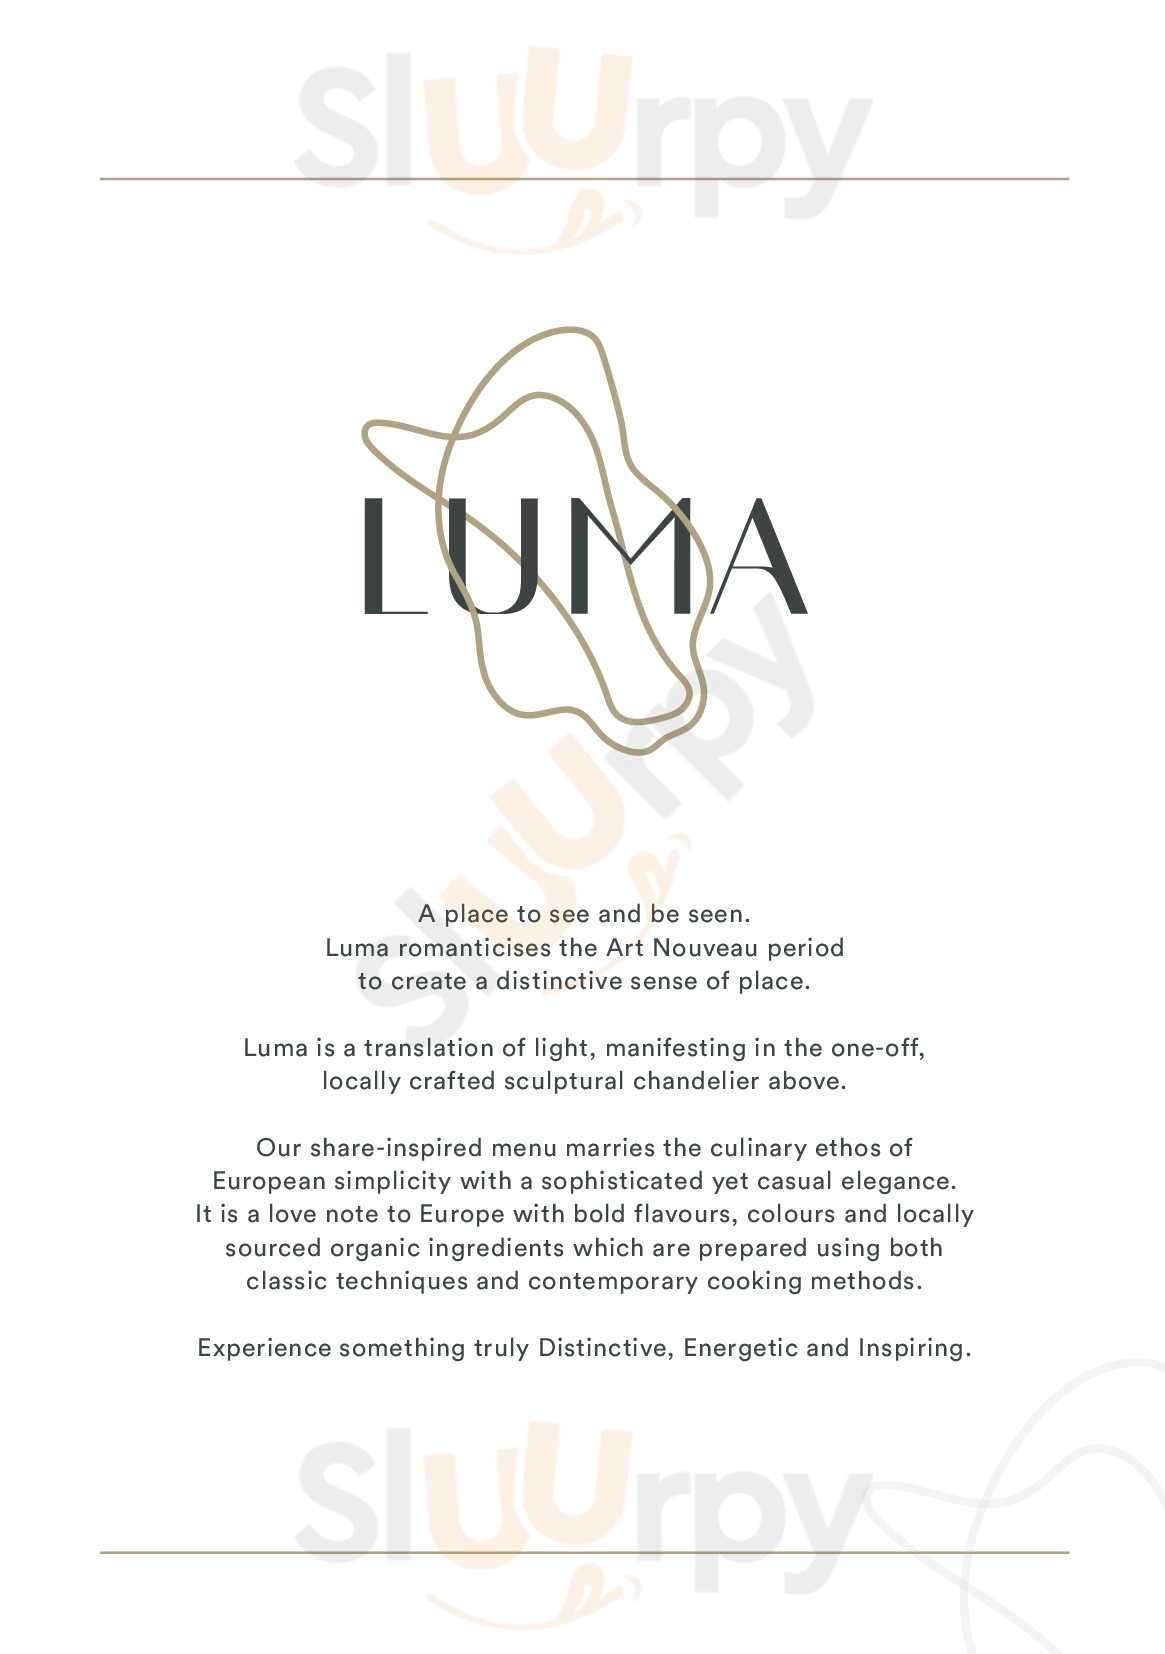 Luma Restaurant And Bar Adelaide Menu - 1